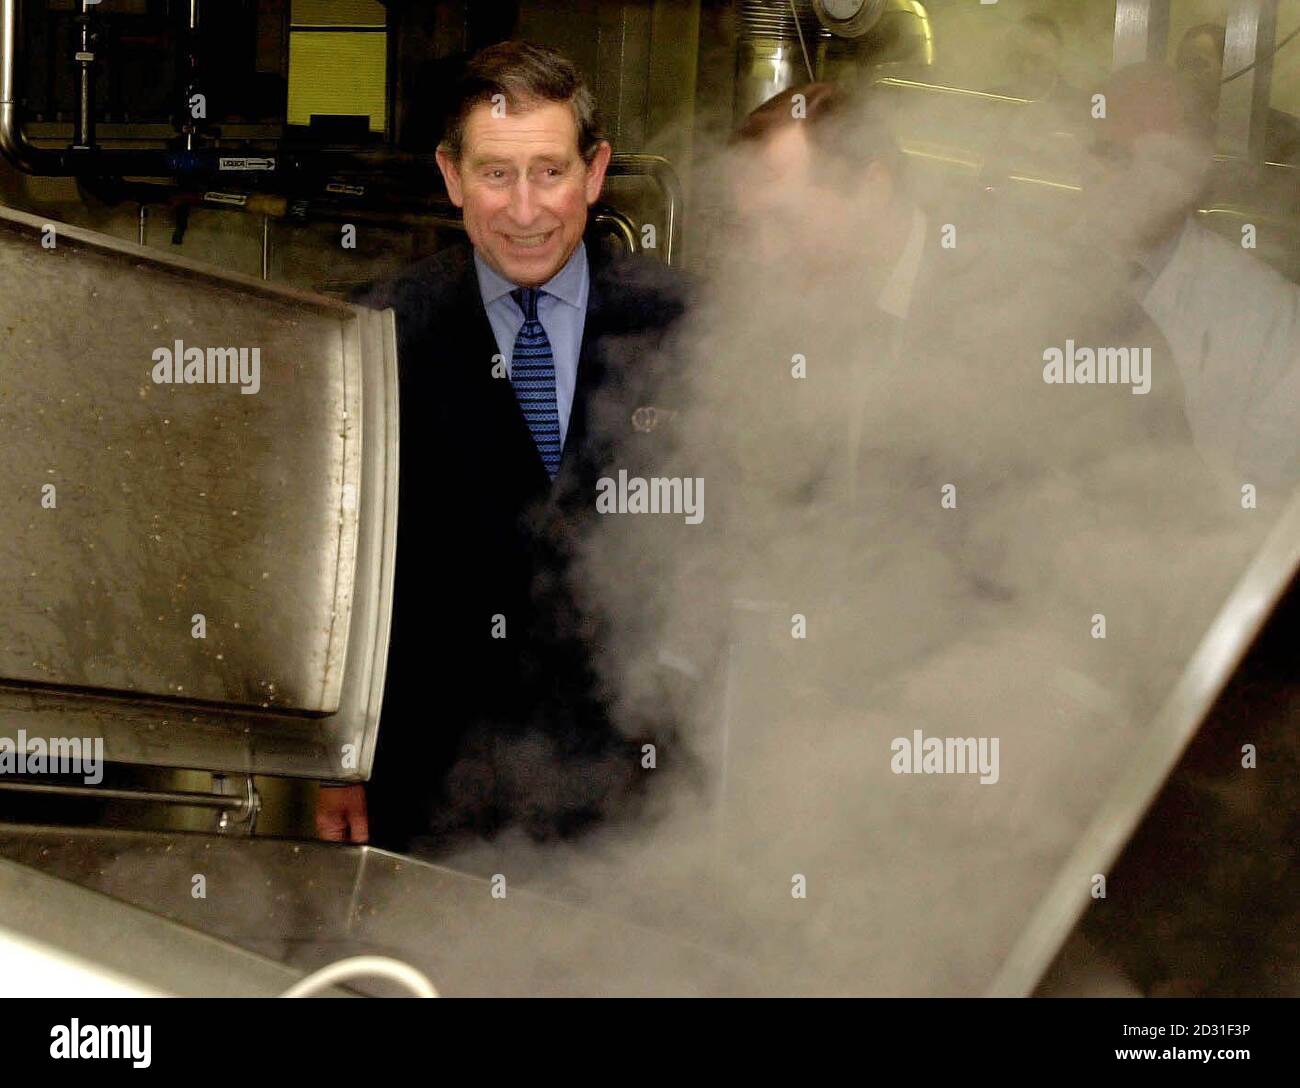 Il Principe del Galles osserva l'aumento del vapore da un'iva durante il processo di produzione mentre visita la fabbrica di birra Timothy Taylors, a Keighley, West Yorkshire. Foto Stock